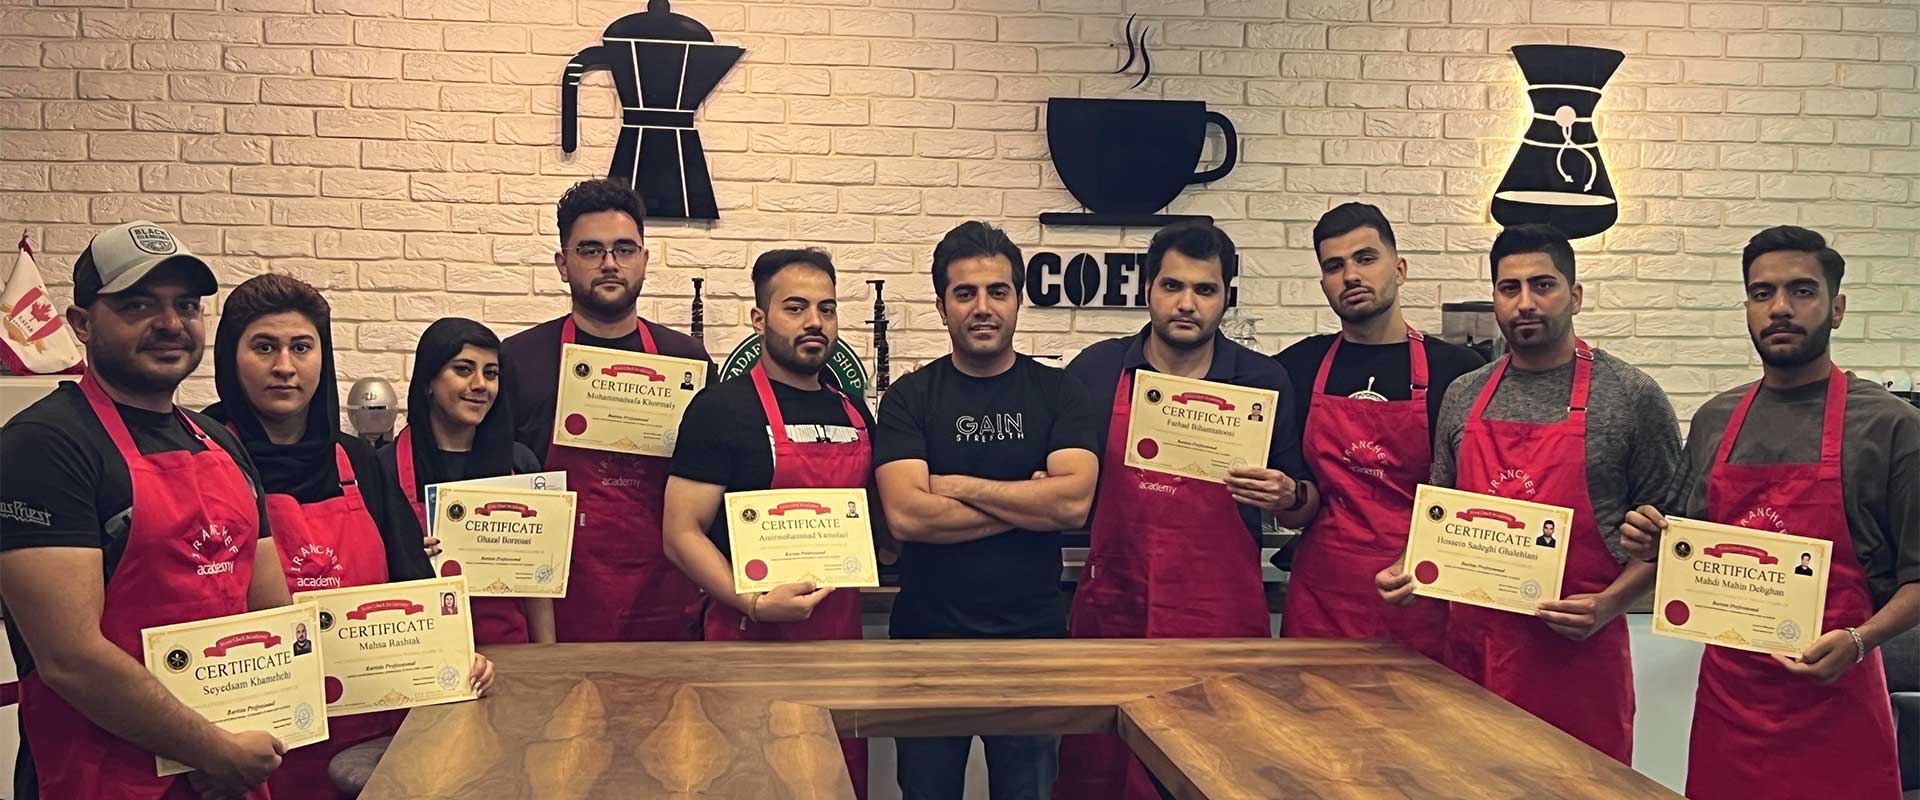 آموزش باریستا و مدیریت کافه داری -ایران شف اولین مدرسه قهوه